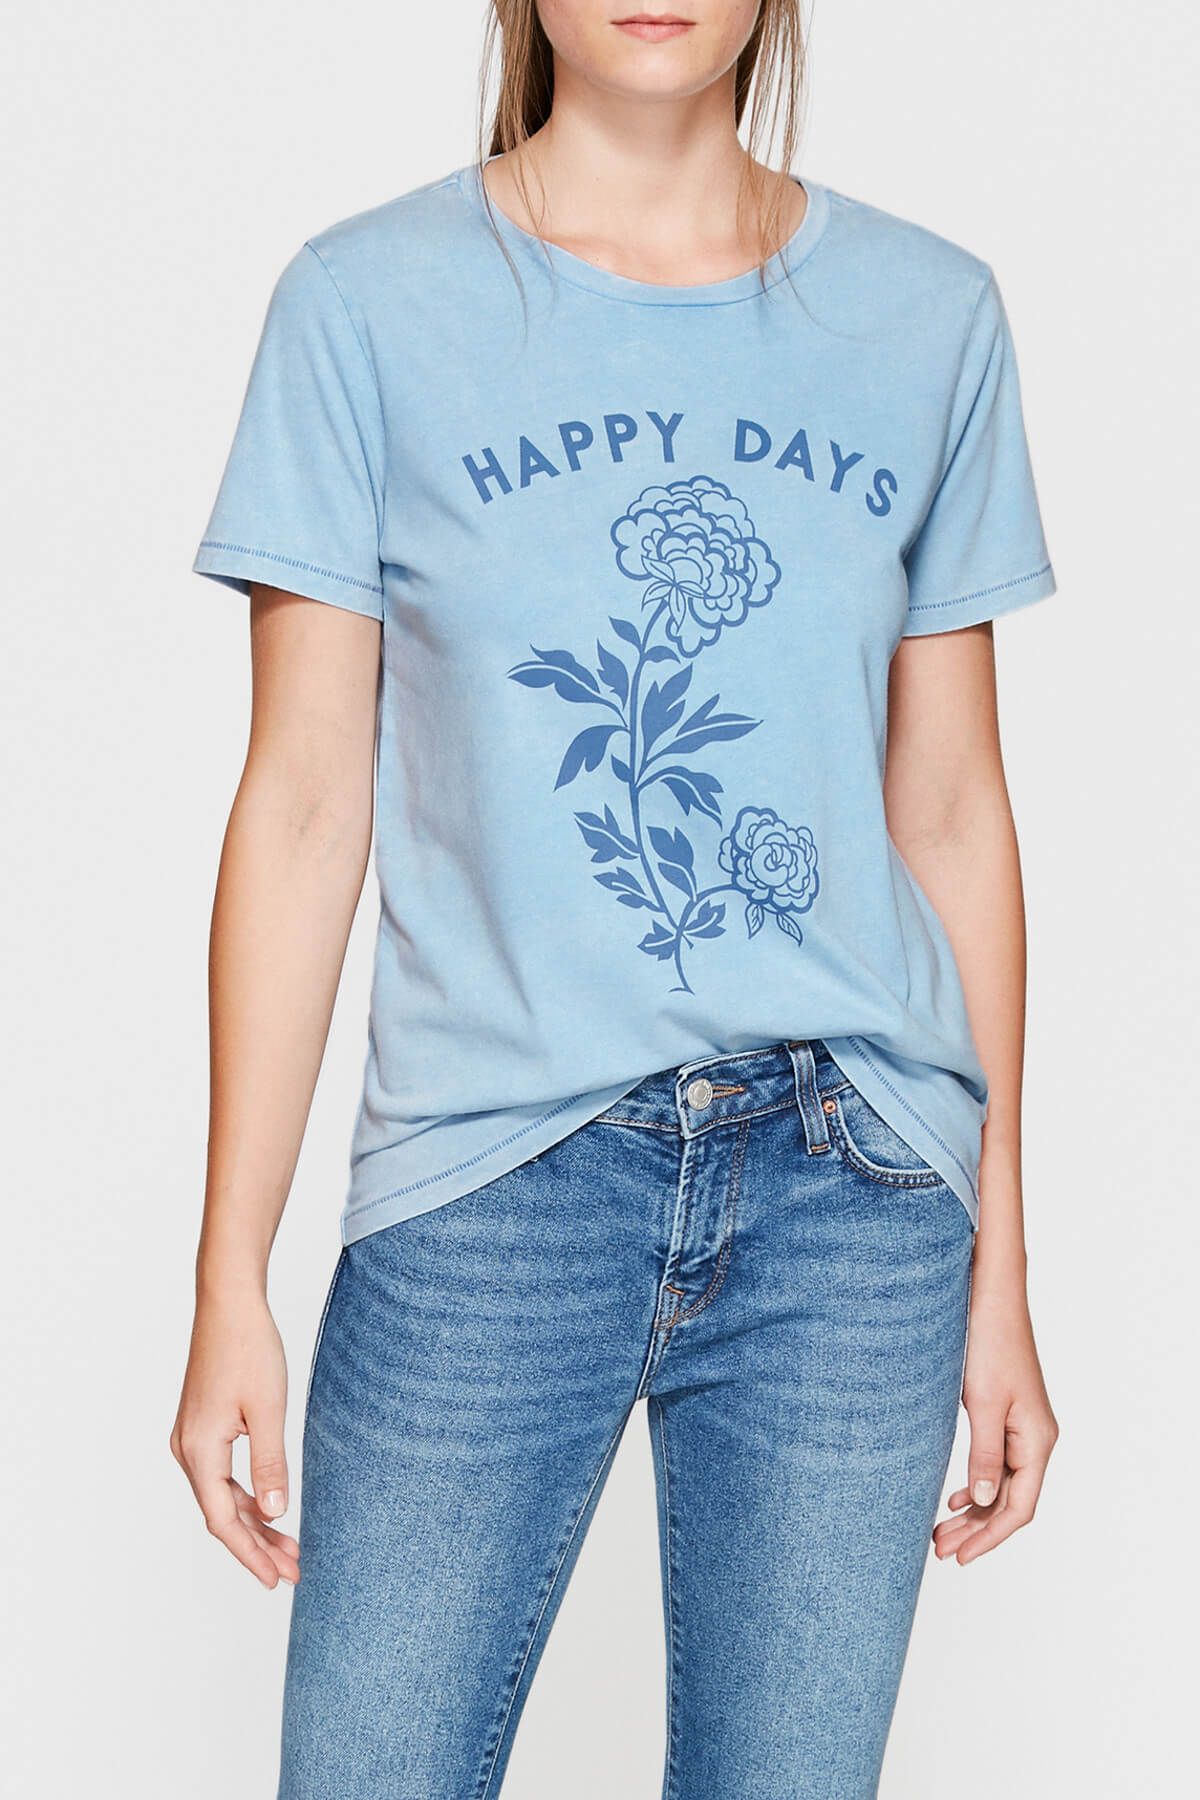 Mavi Kadın Happy Days Baskılı Mavi T-shirt 167395-27123